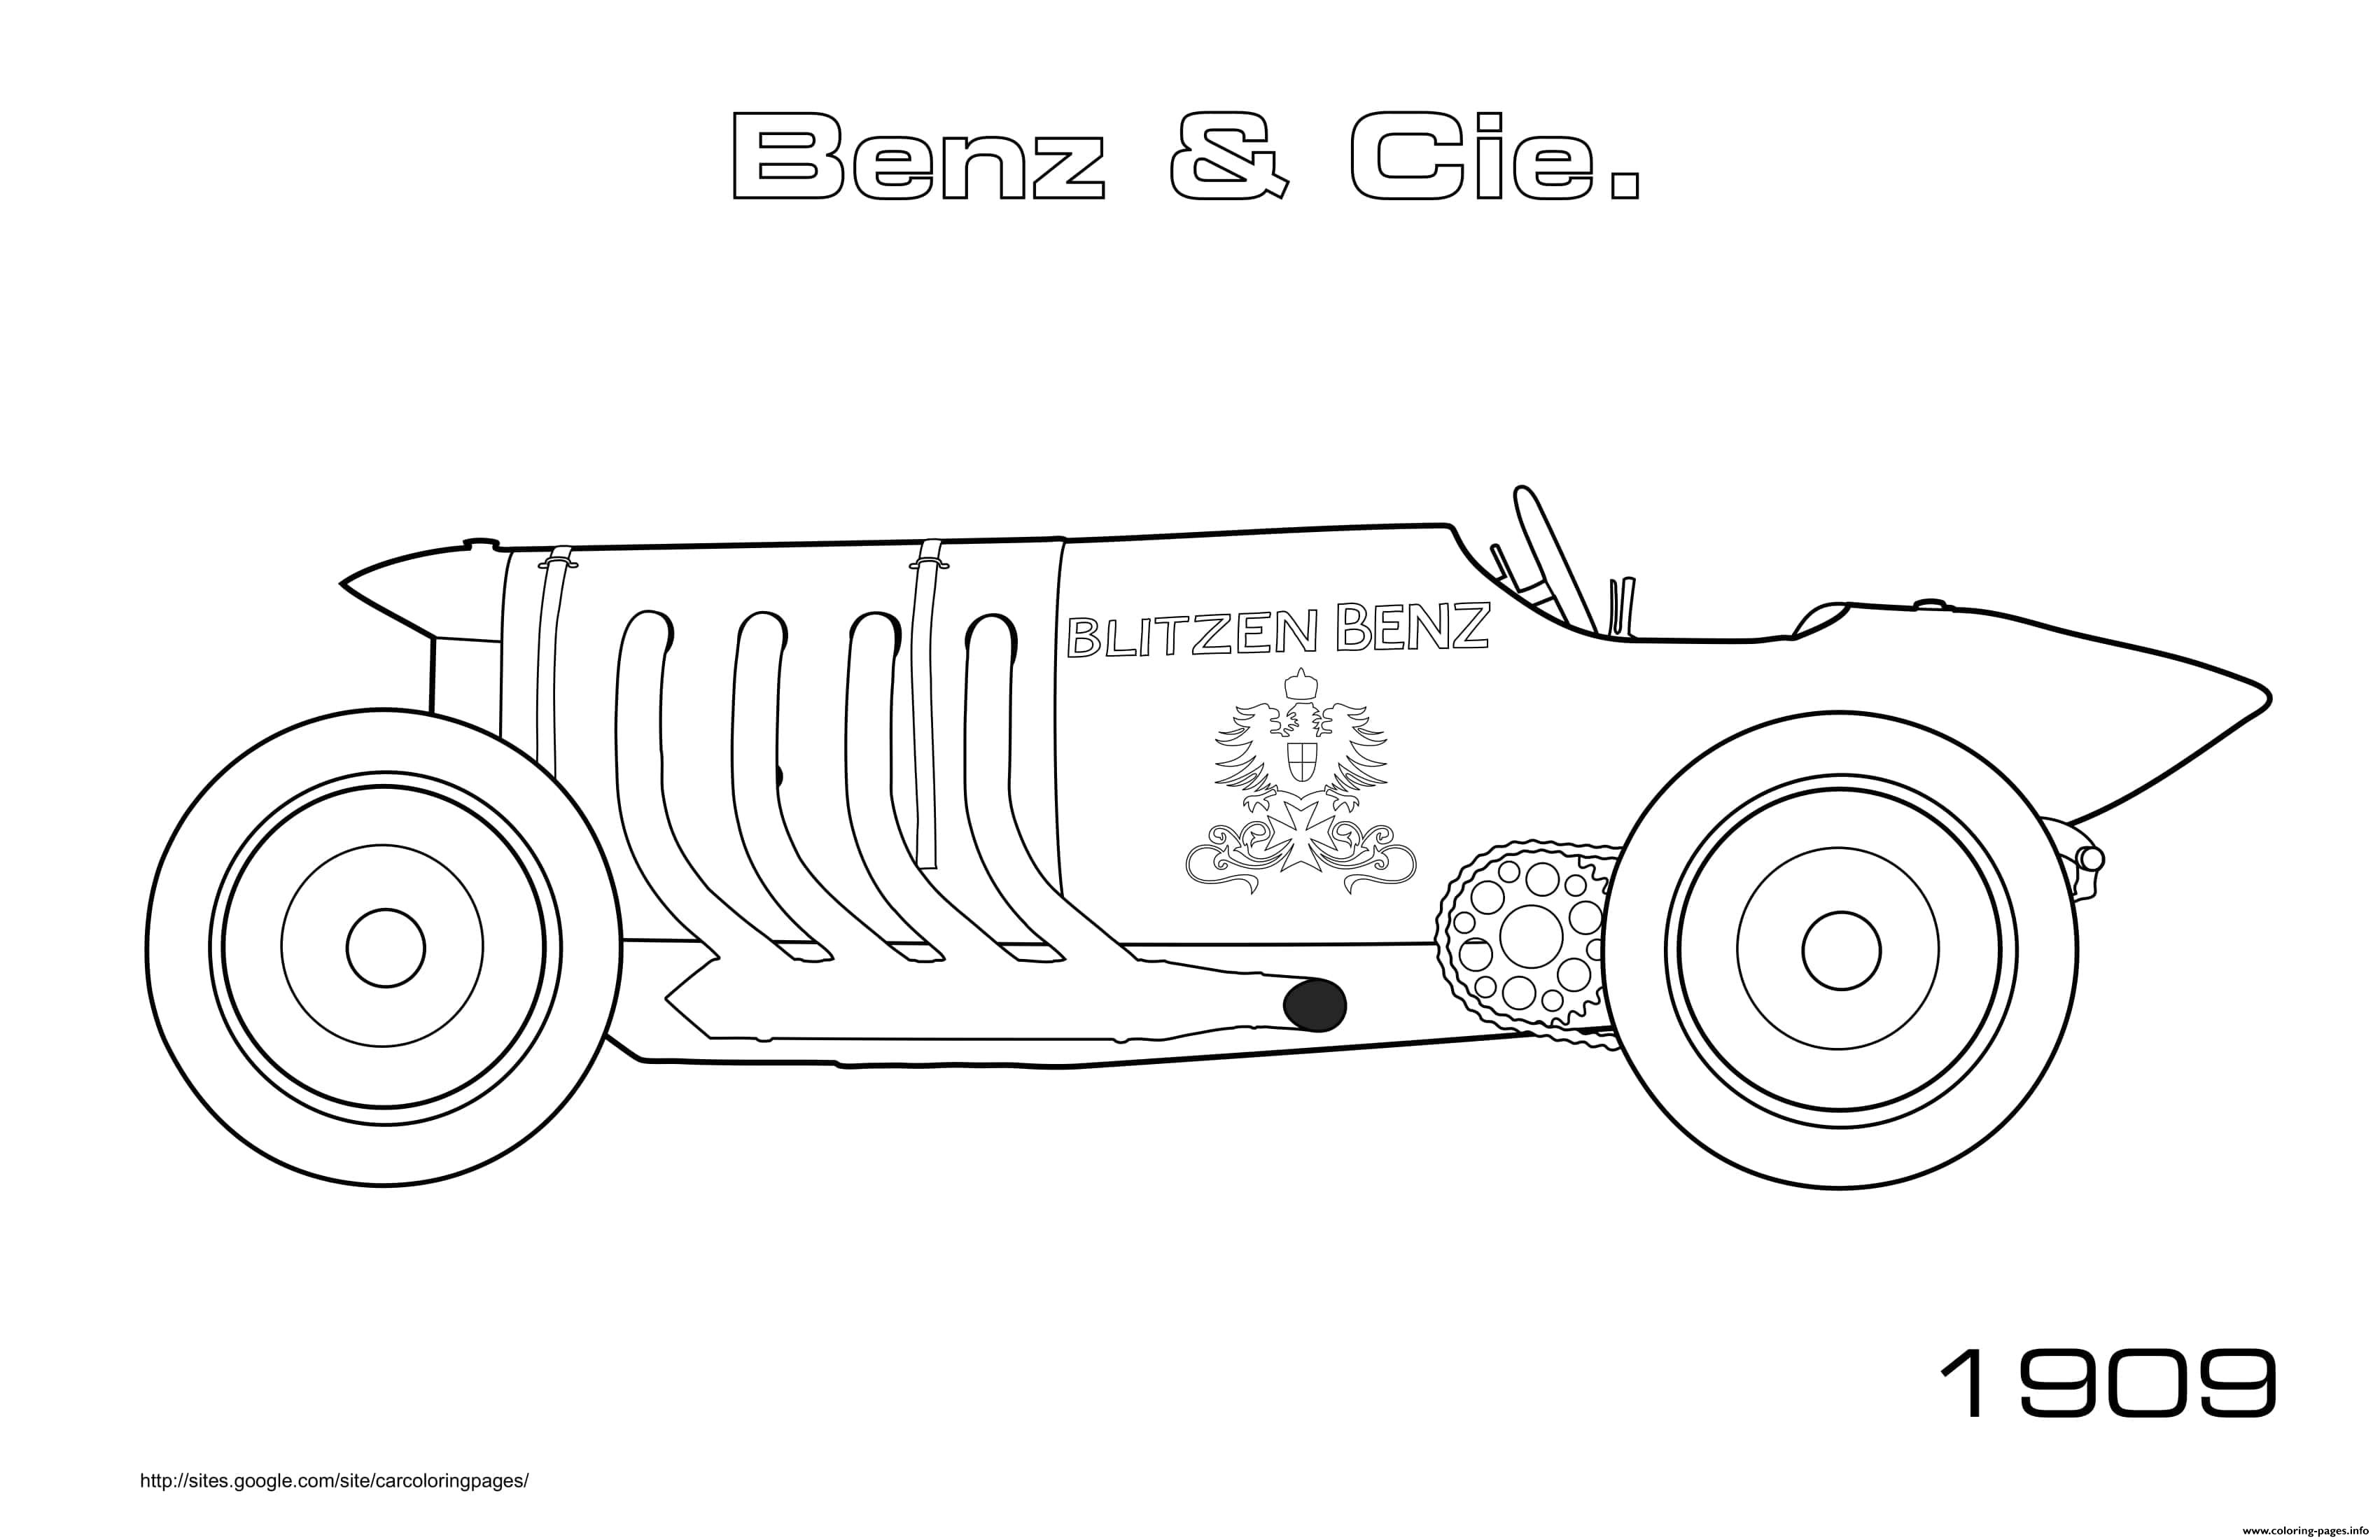 Old Car Benz Cie Blitzen Benz 1909 coloring